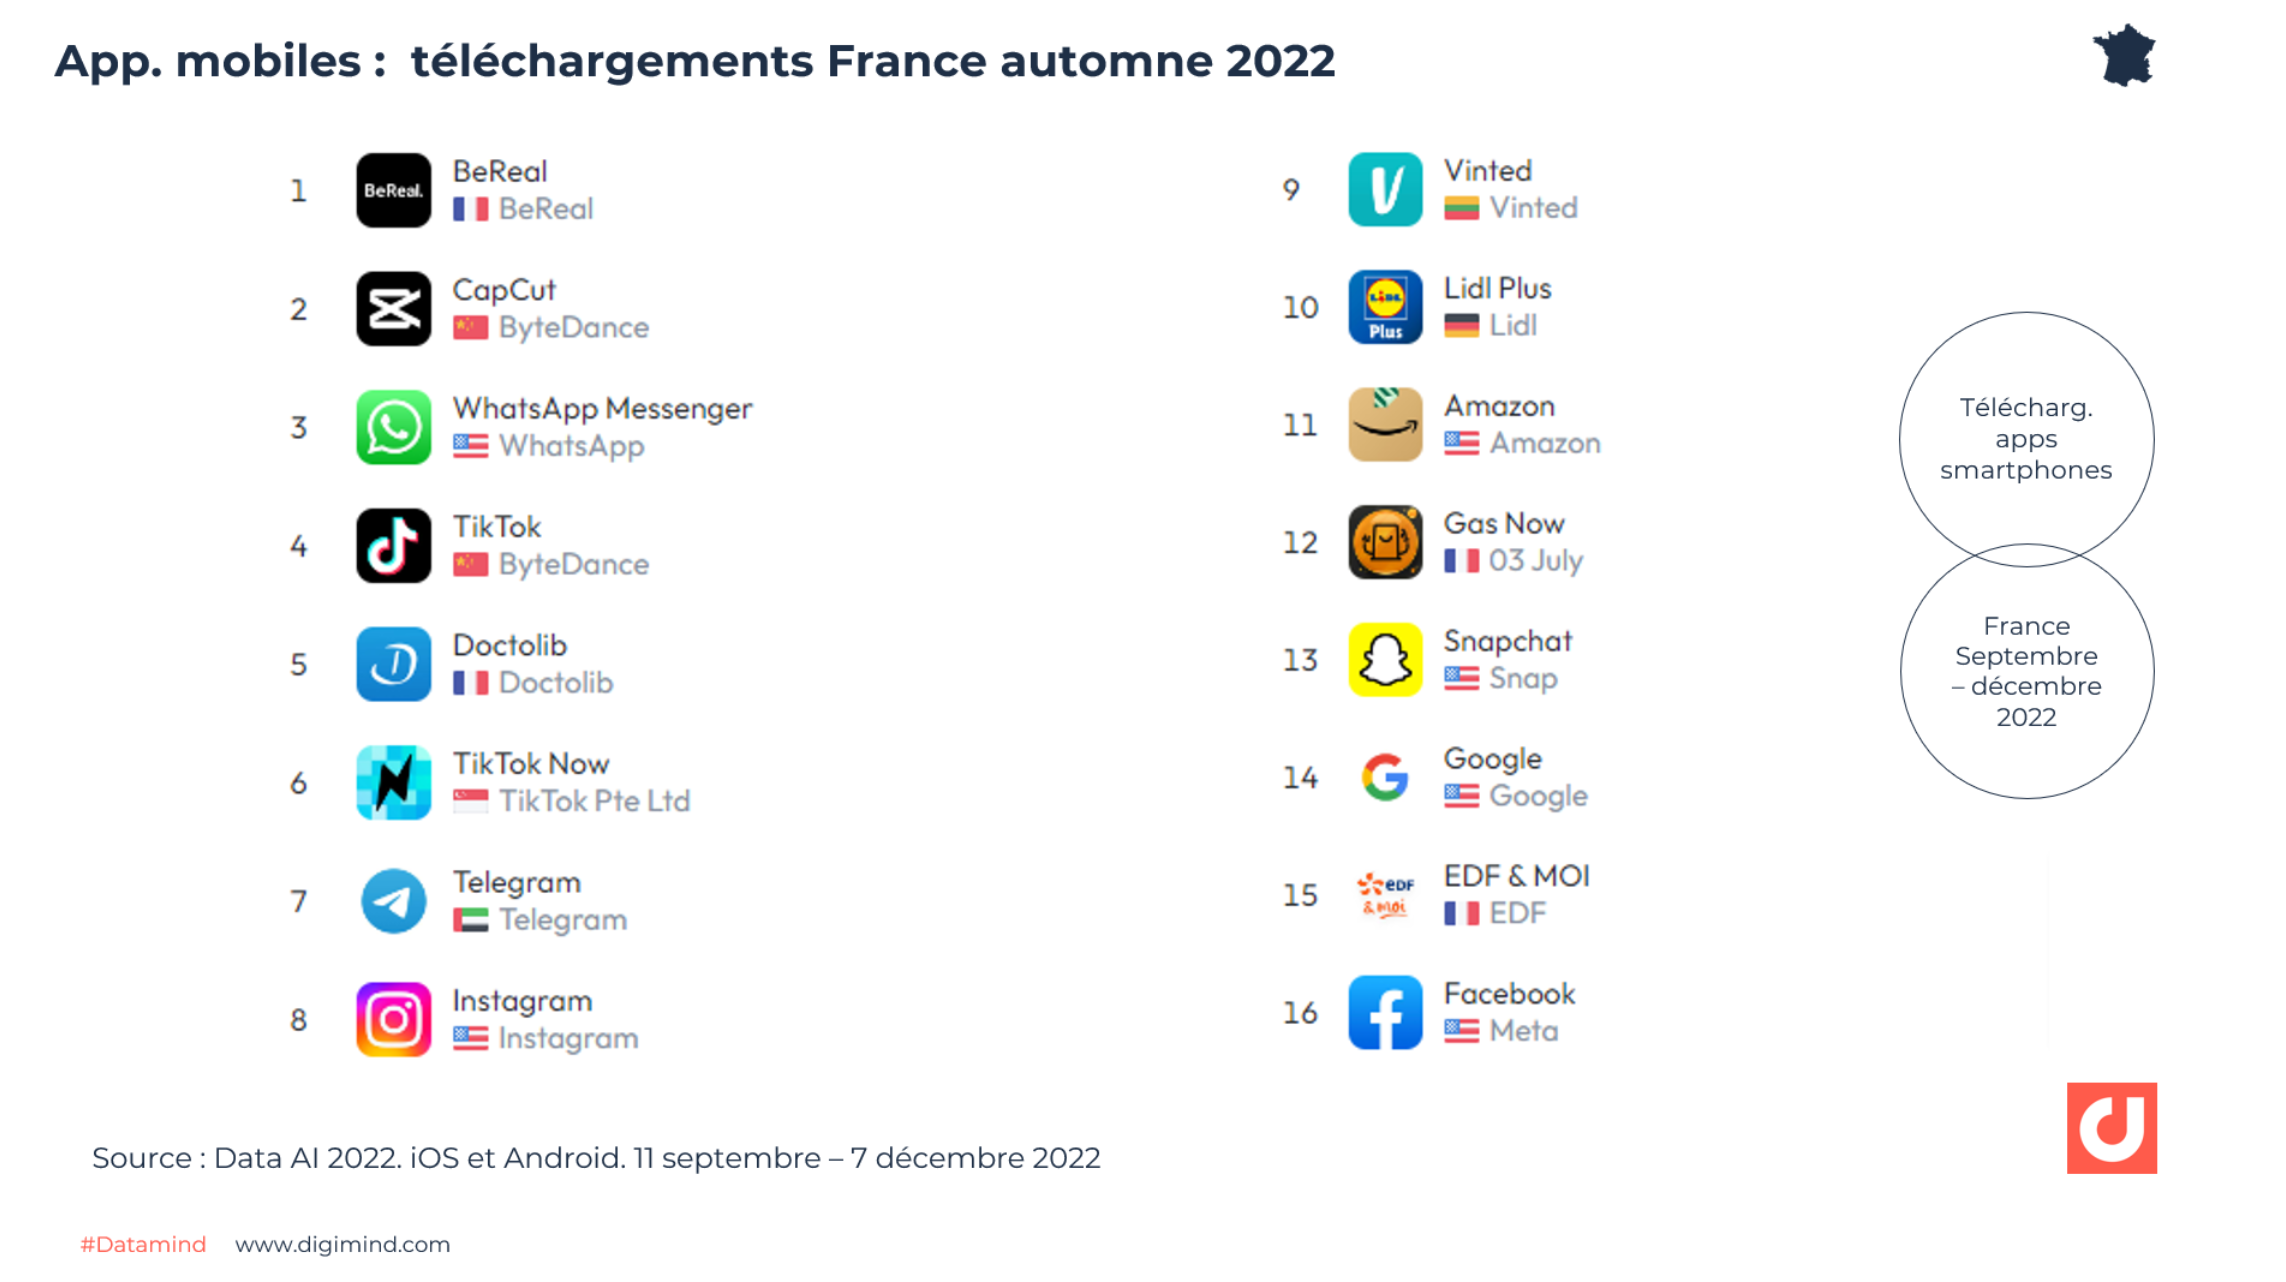    Les app. Moibles les plus téléchargés en France entre septembre et décembre 2022